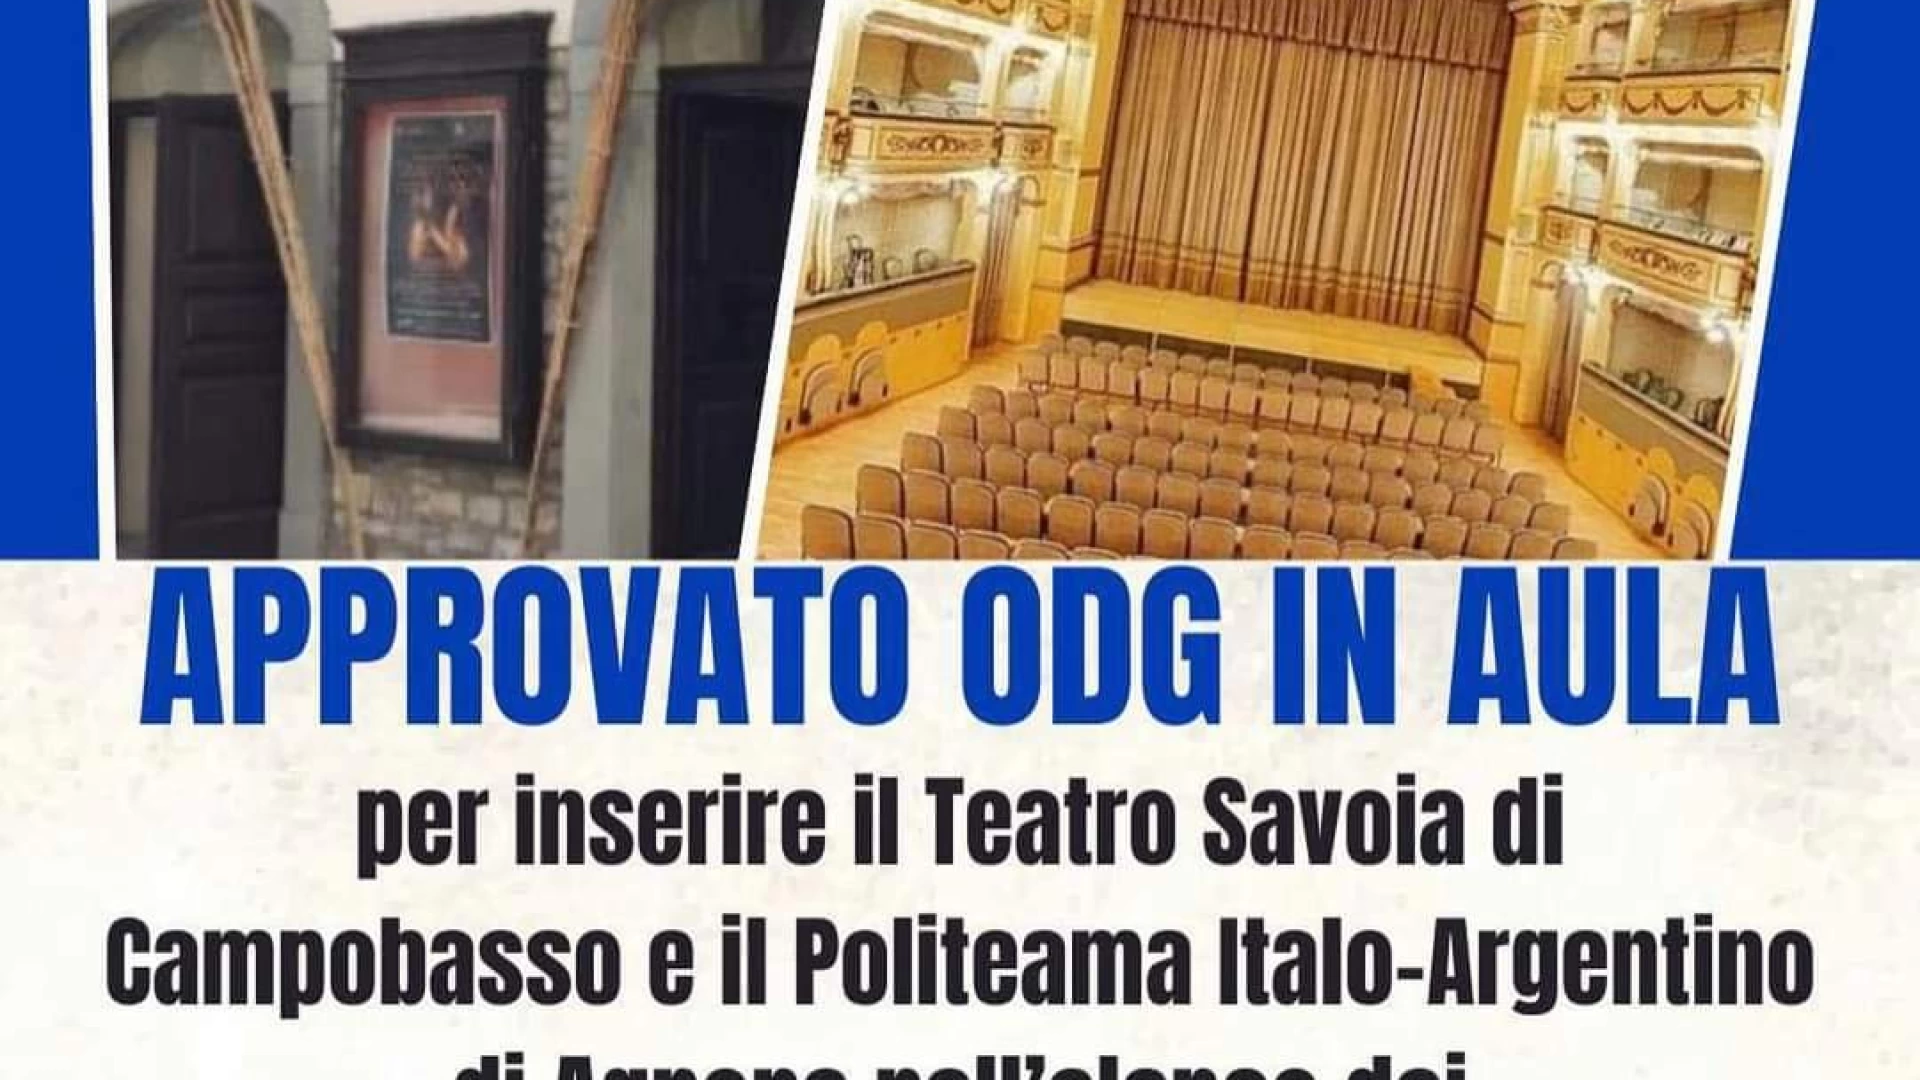 Il Teatro Savoia ed il Politeama Italo-Argentino di Agnone inseriti nell’elenco dei teatri dichiarati monumenti nazionali dal Governo. In aula passa l’ordine del giorno di Elisabetta Lancellotta.